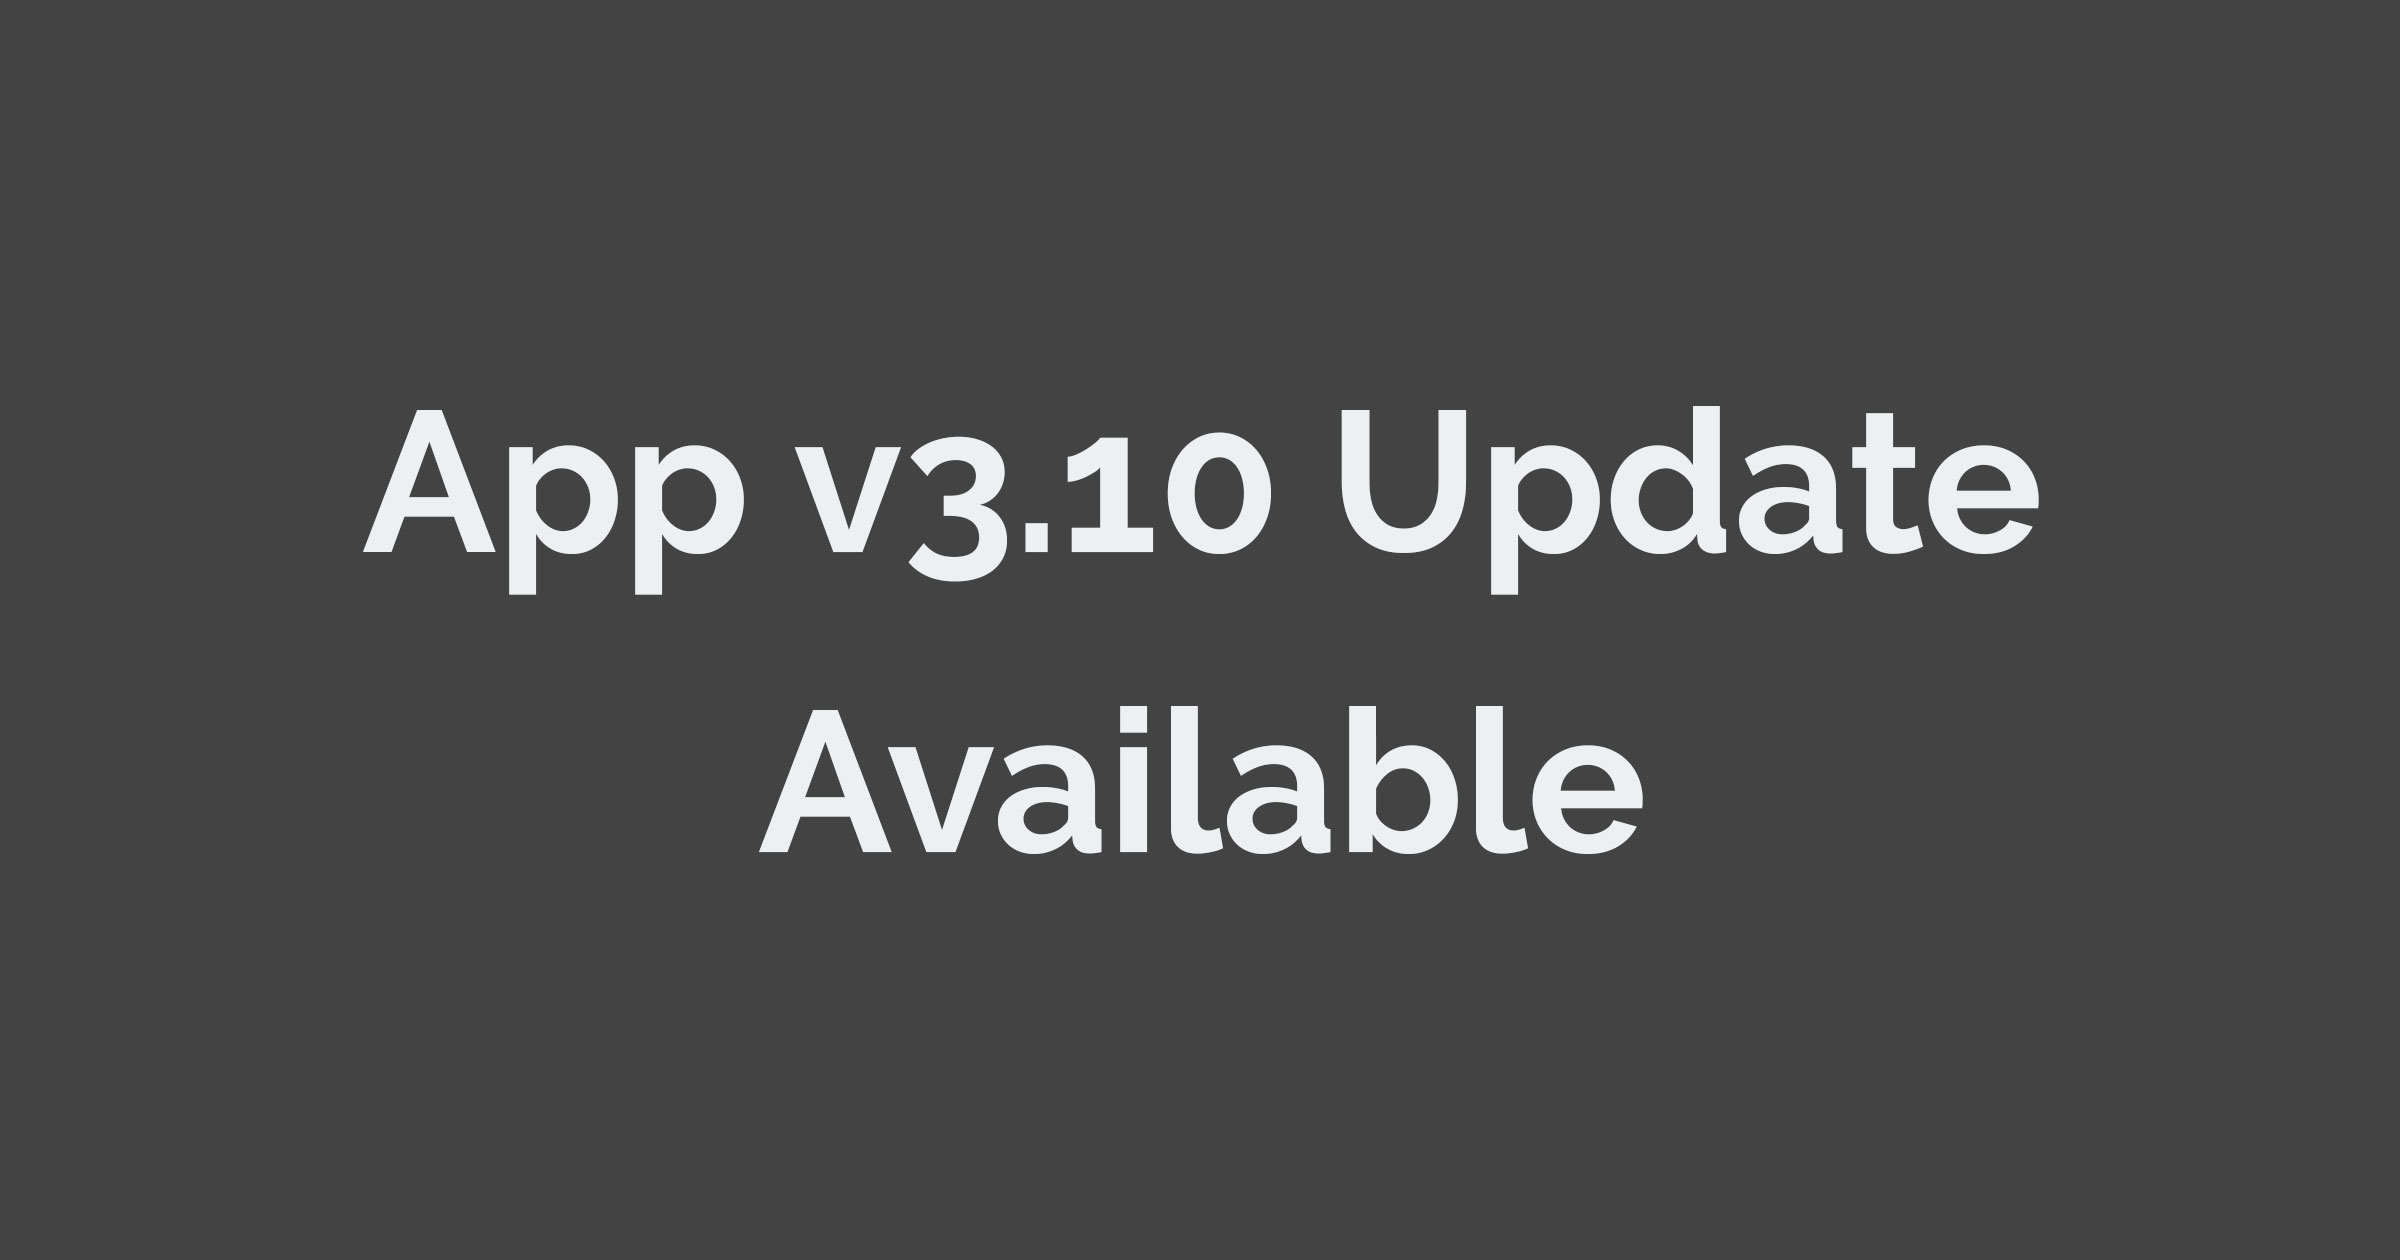 App v3.10 Update